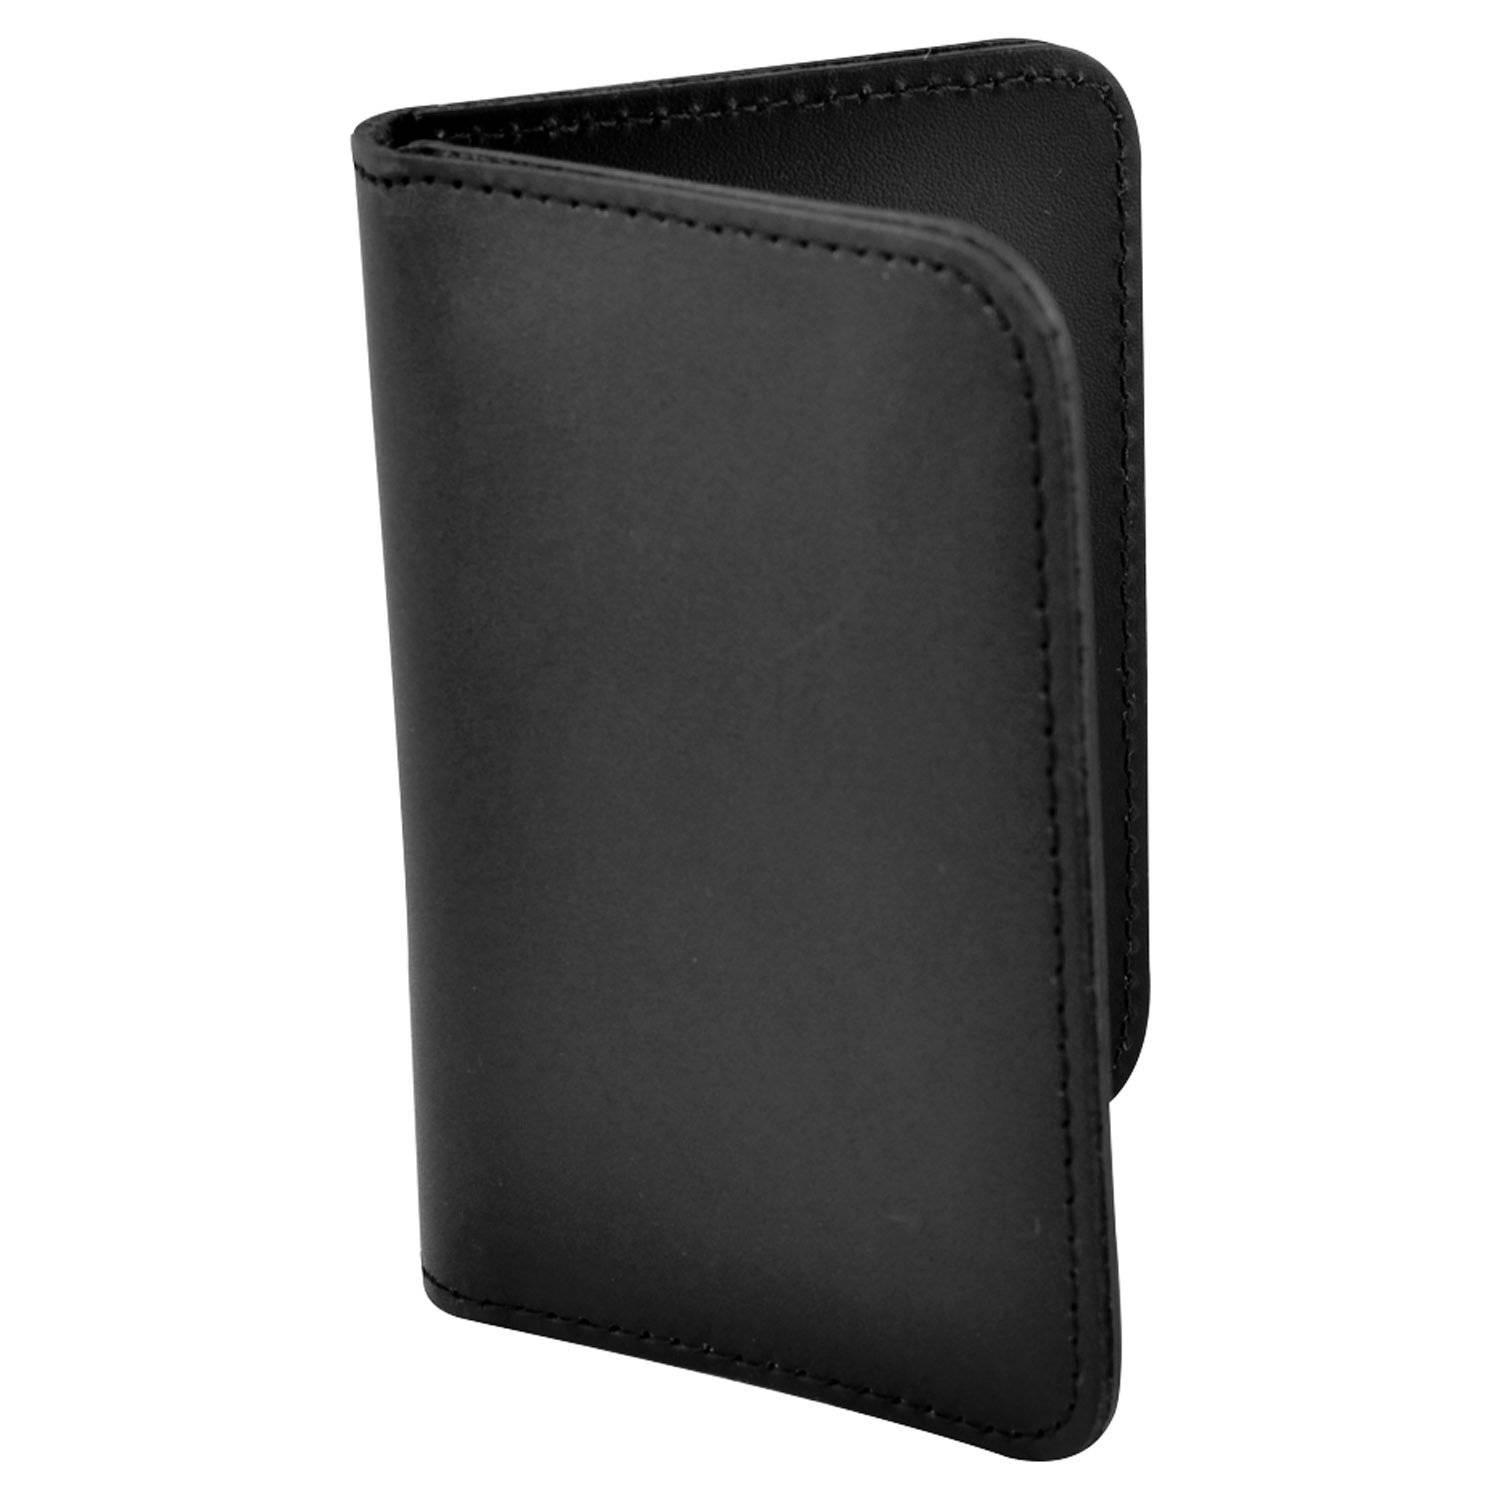 Smith & Warren Duty Leather Book Style Shield Case